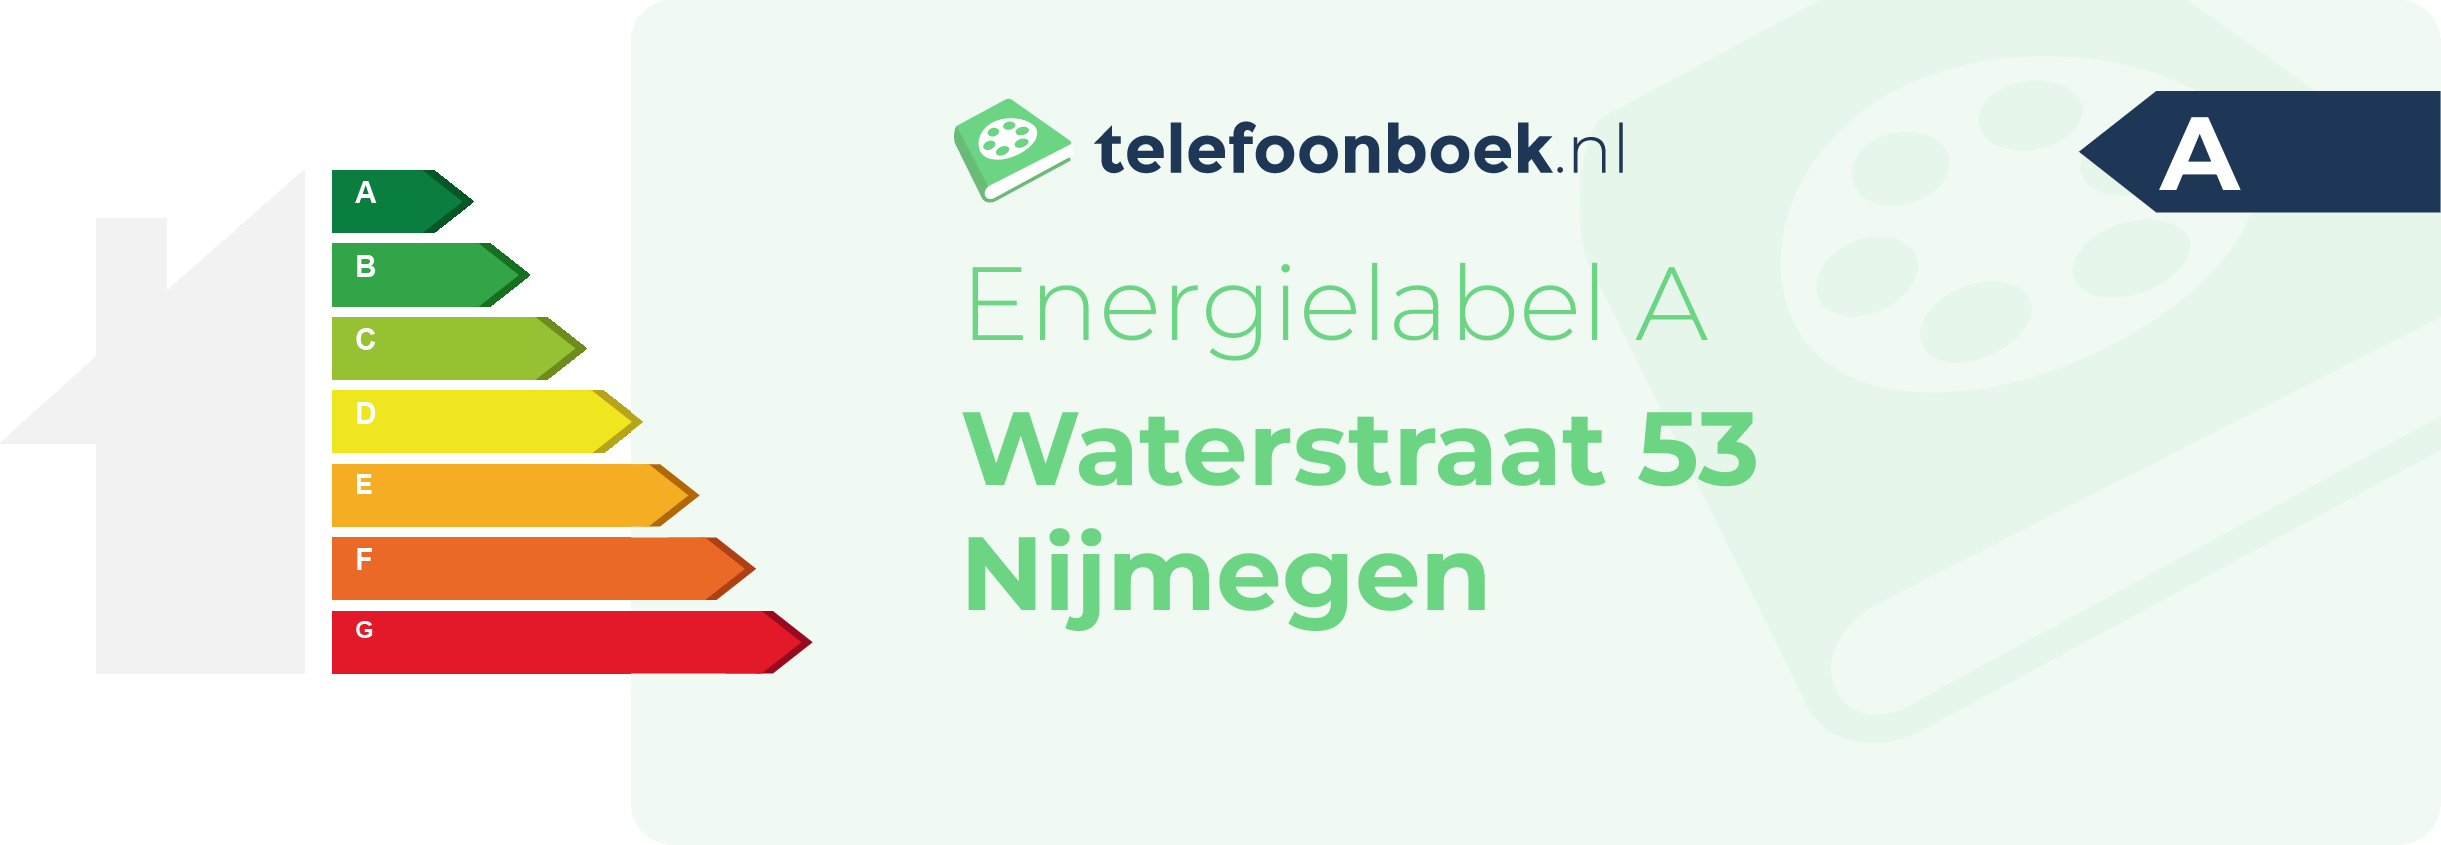 Energielabel Waterstraat 53 Nijmegen